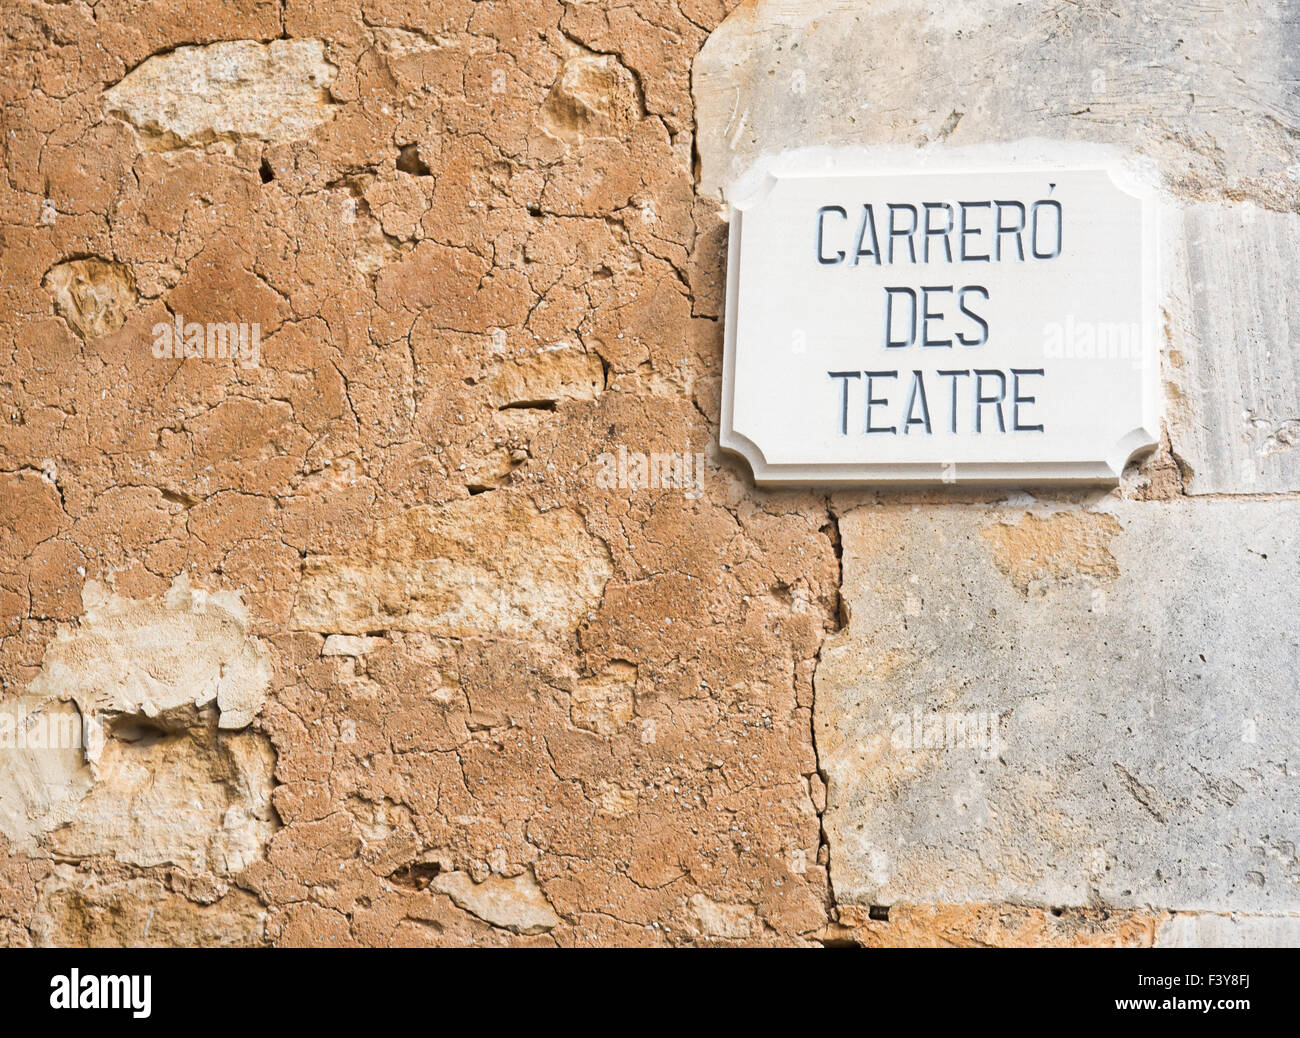 Vecchio muro Carrero des teatre Foto Stock